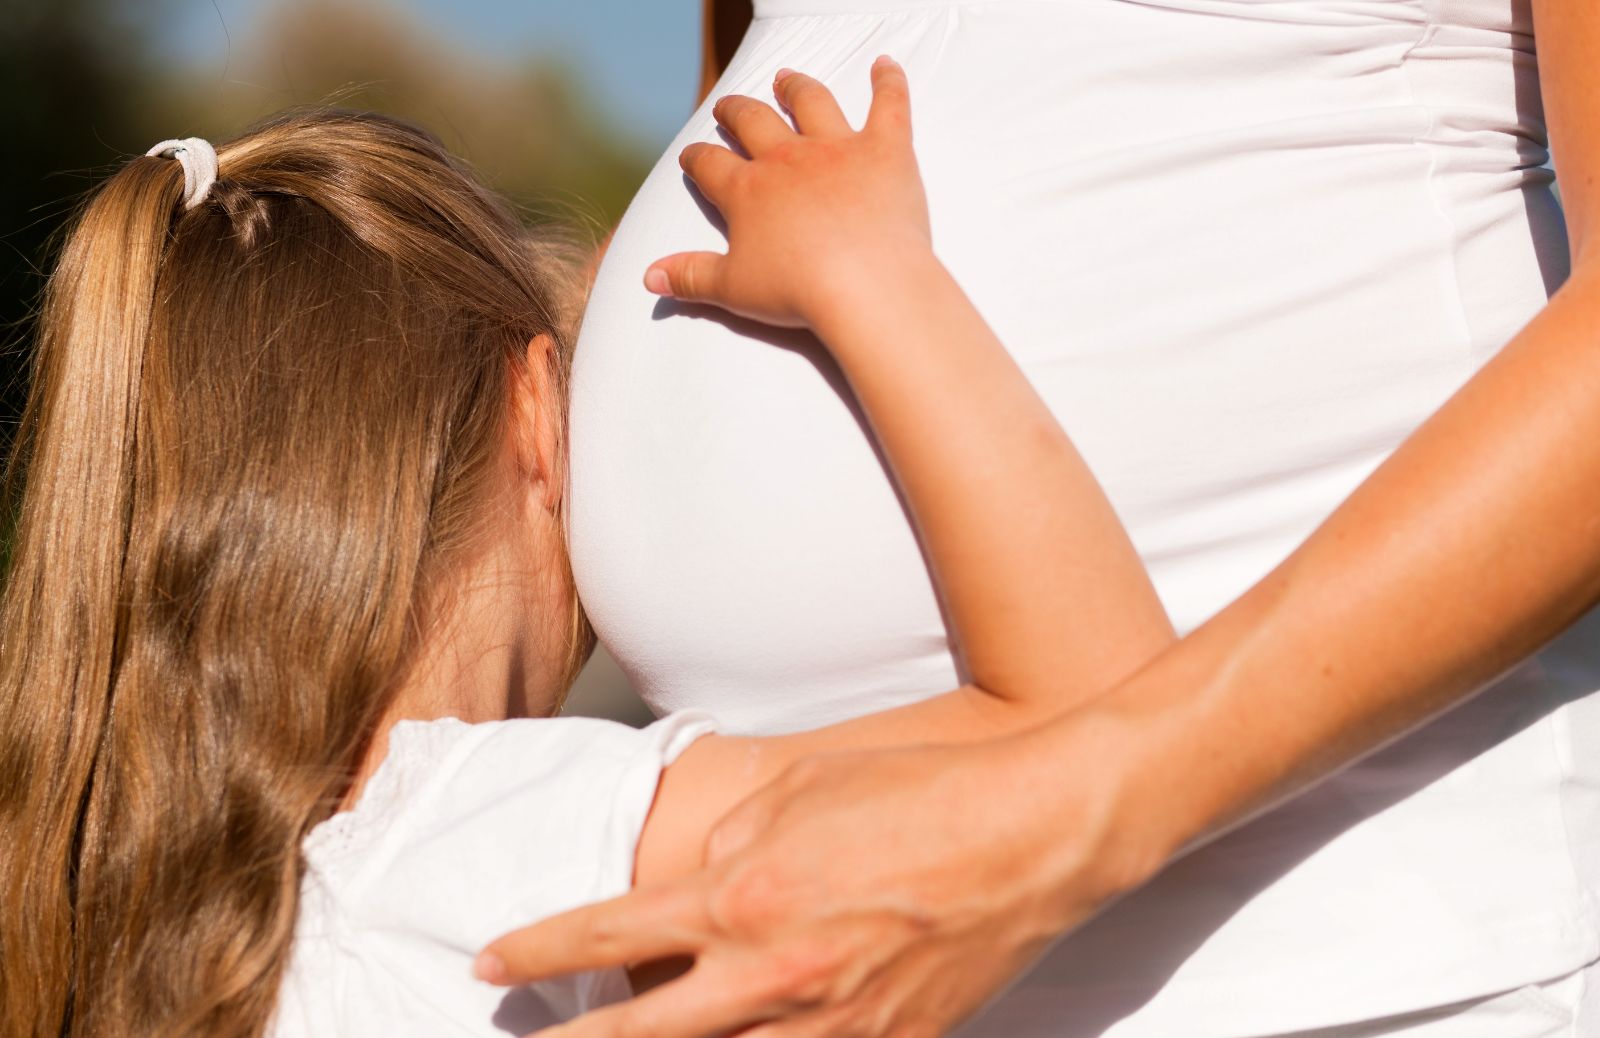 Utero retroverso e gravidanza: cosa comporta?